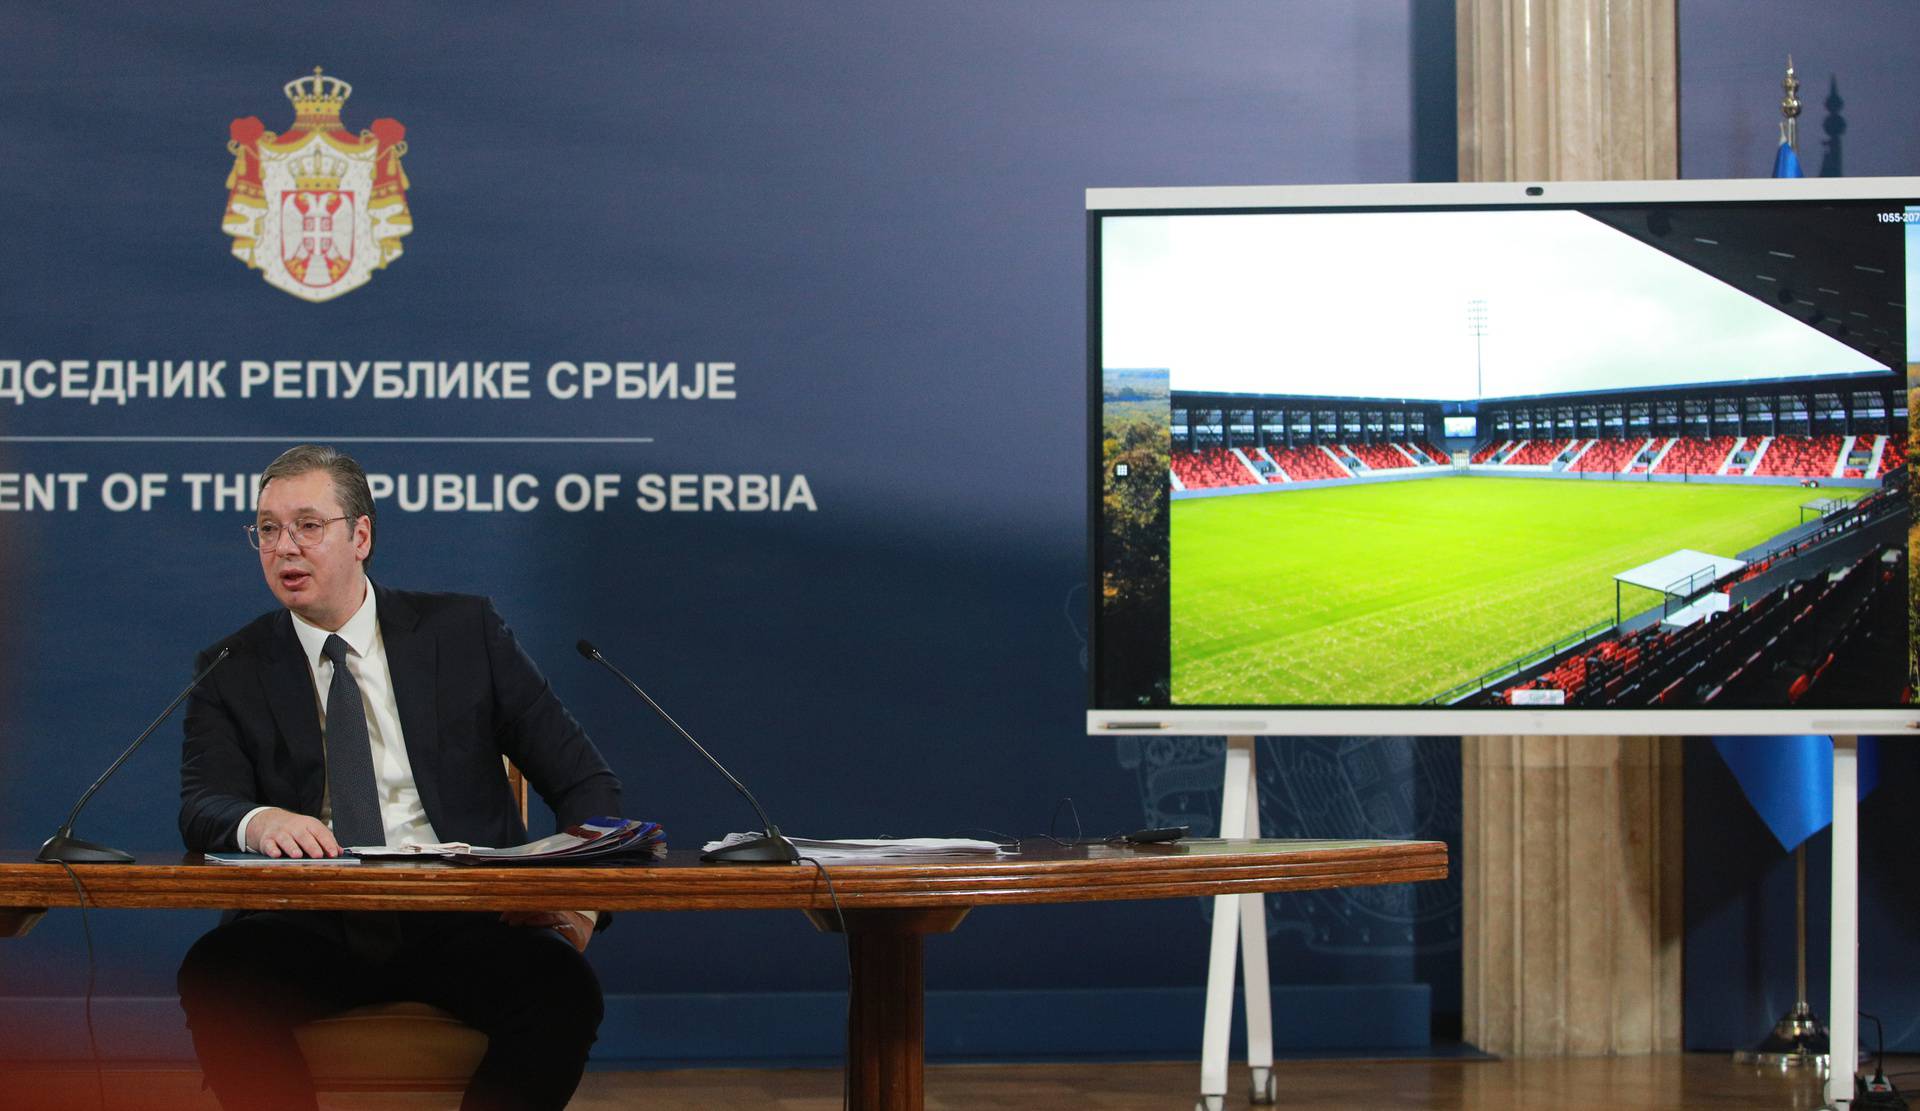 Beograd: Predsjednik Vučić obratio se javnosti o pitanju Kosova